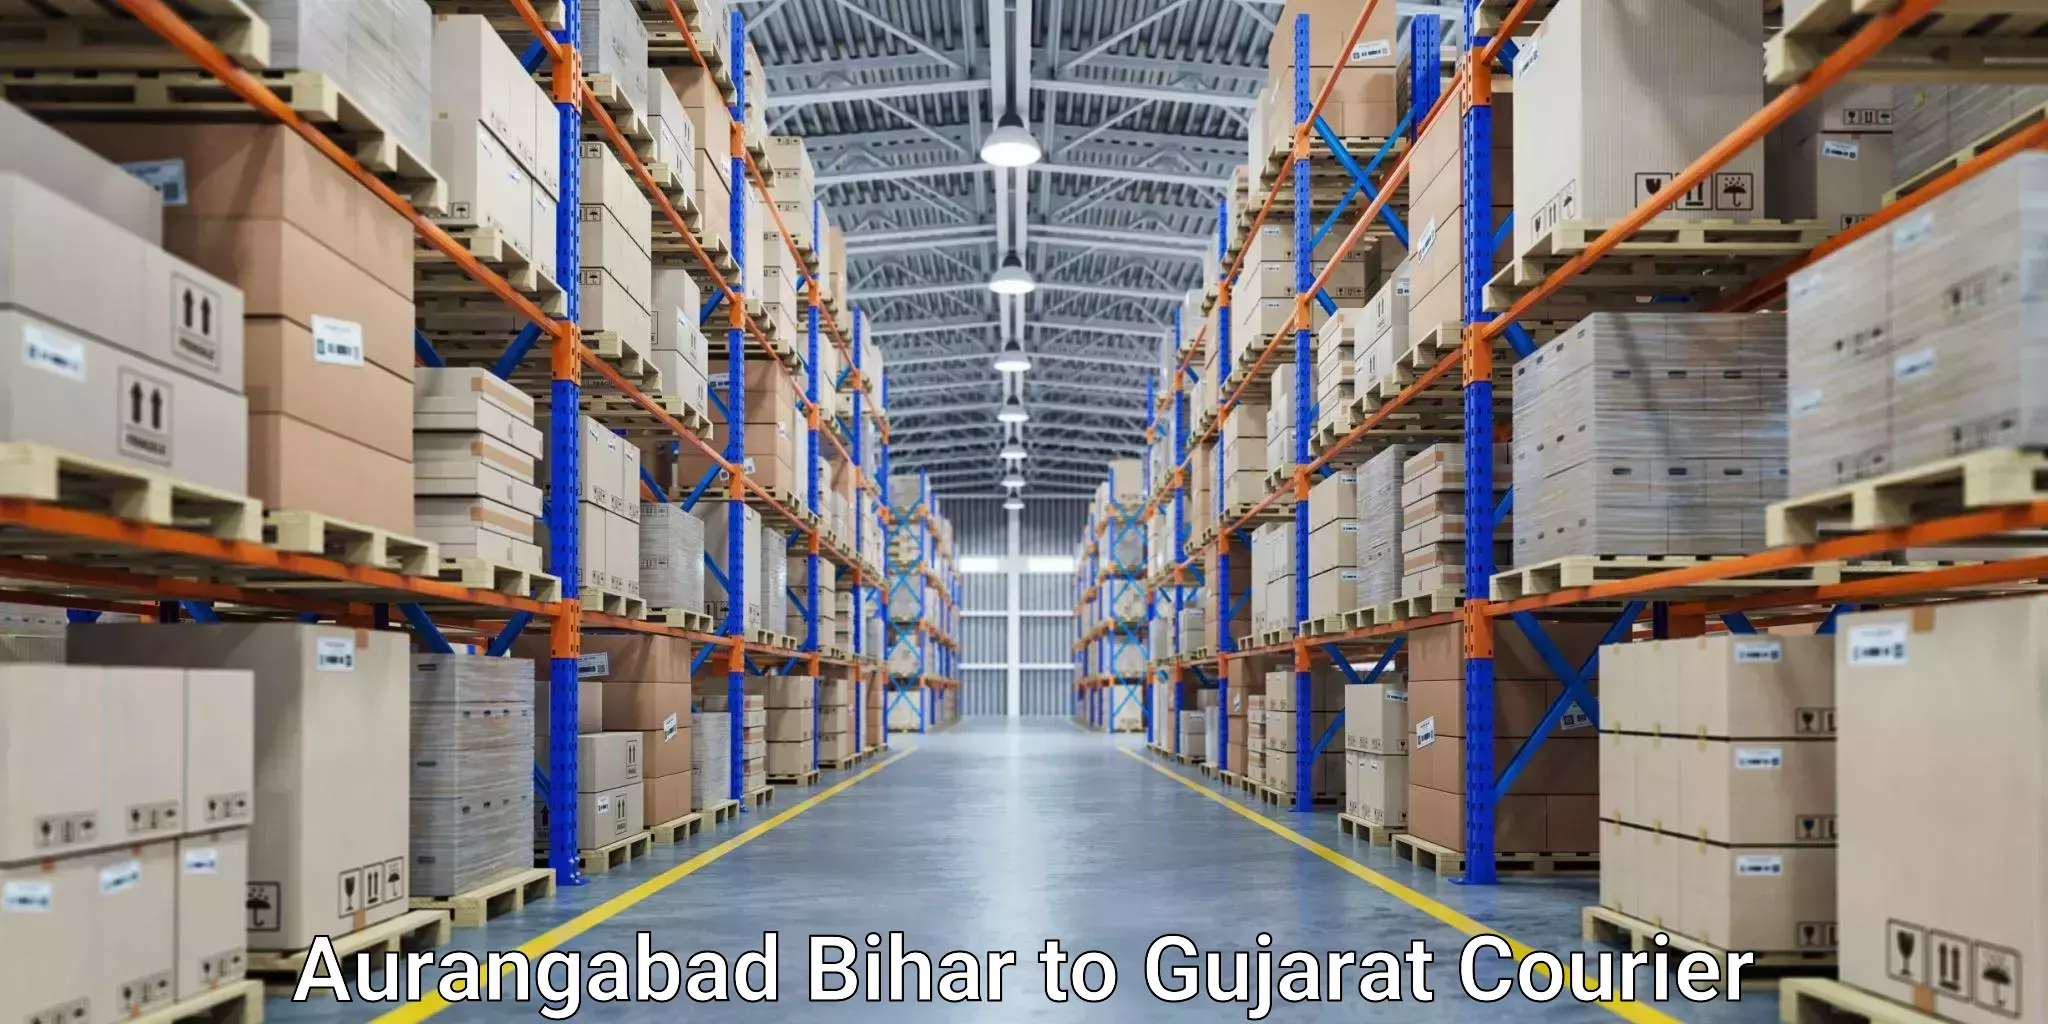 Professional courier services Aurangabad Bihar to Jamnagar